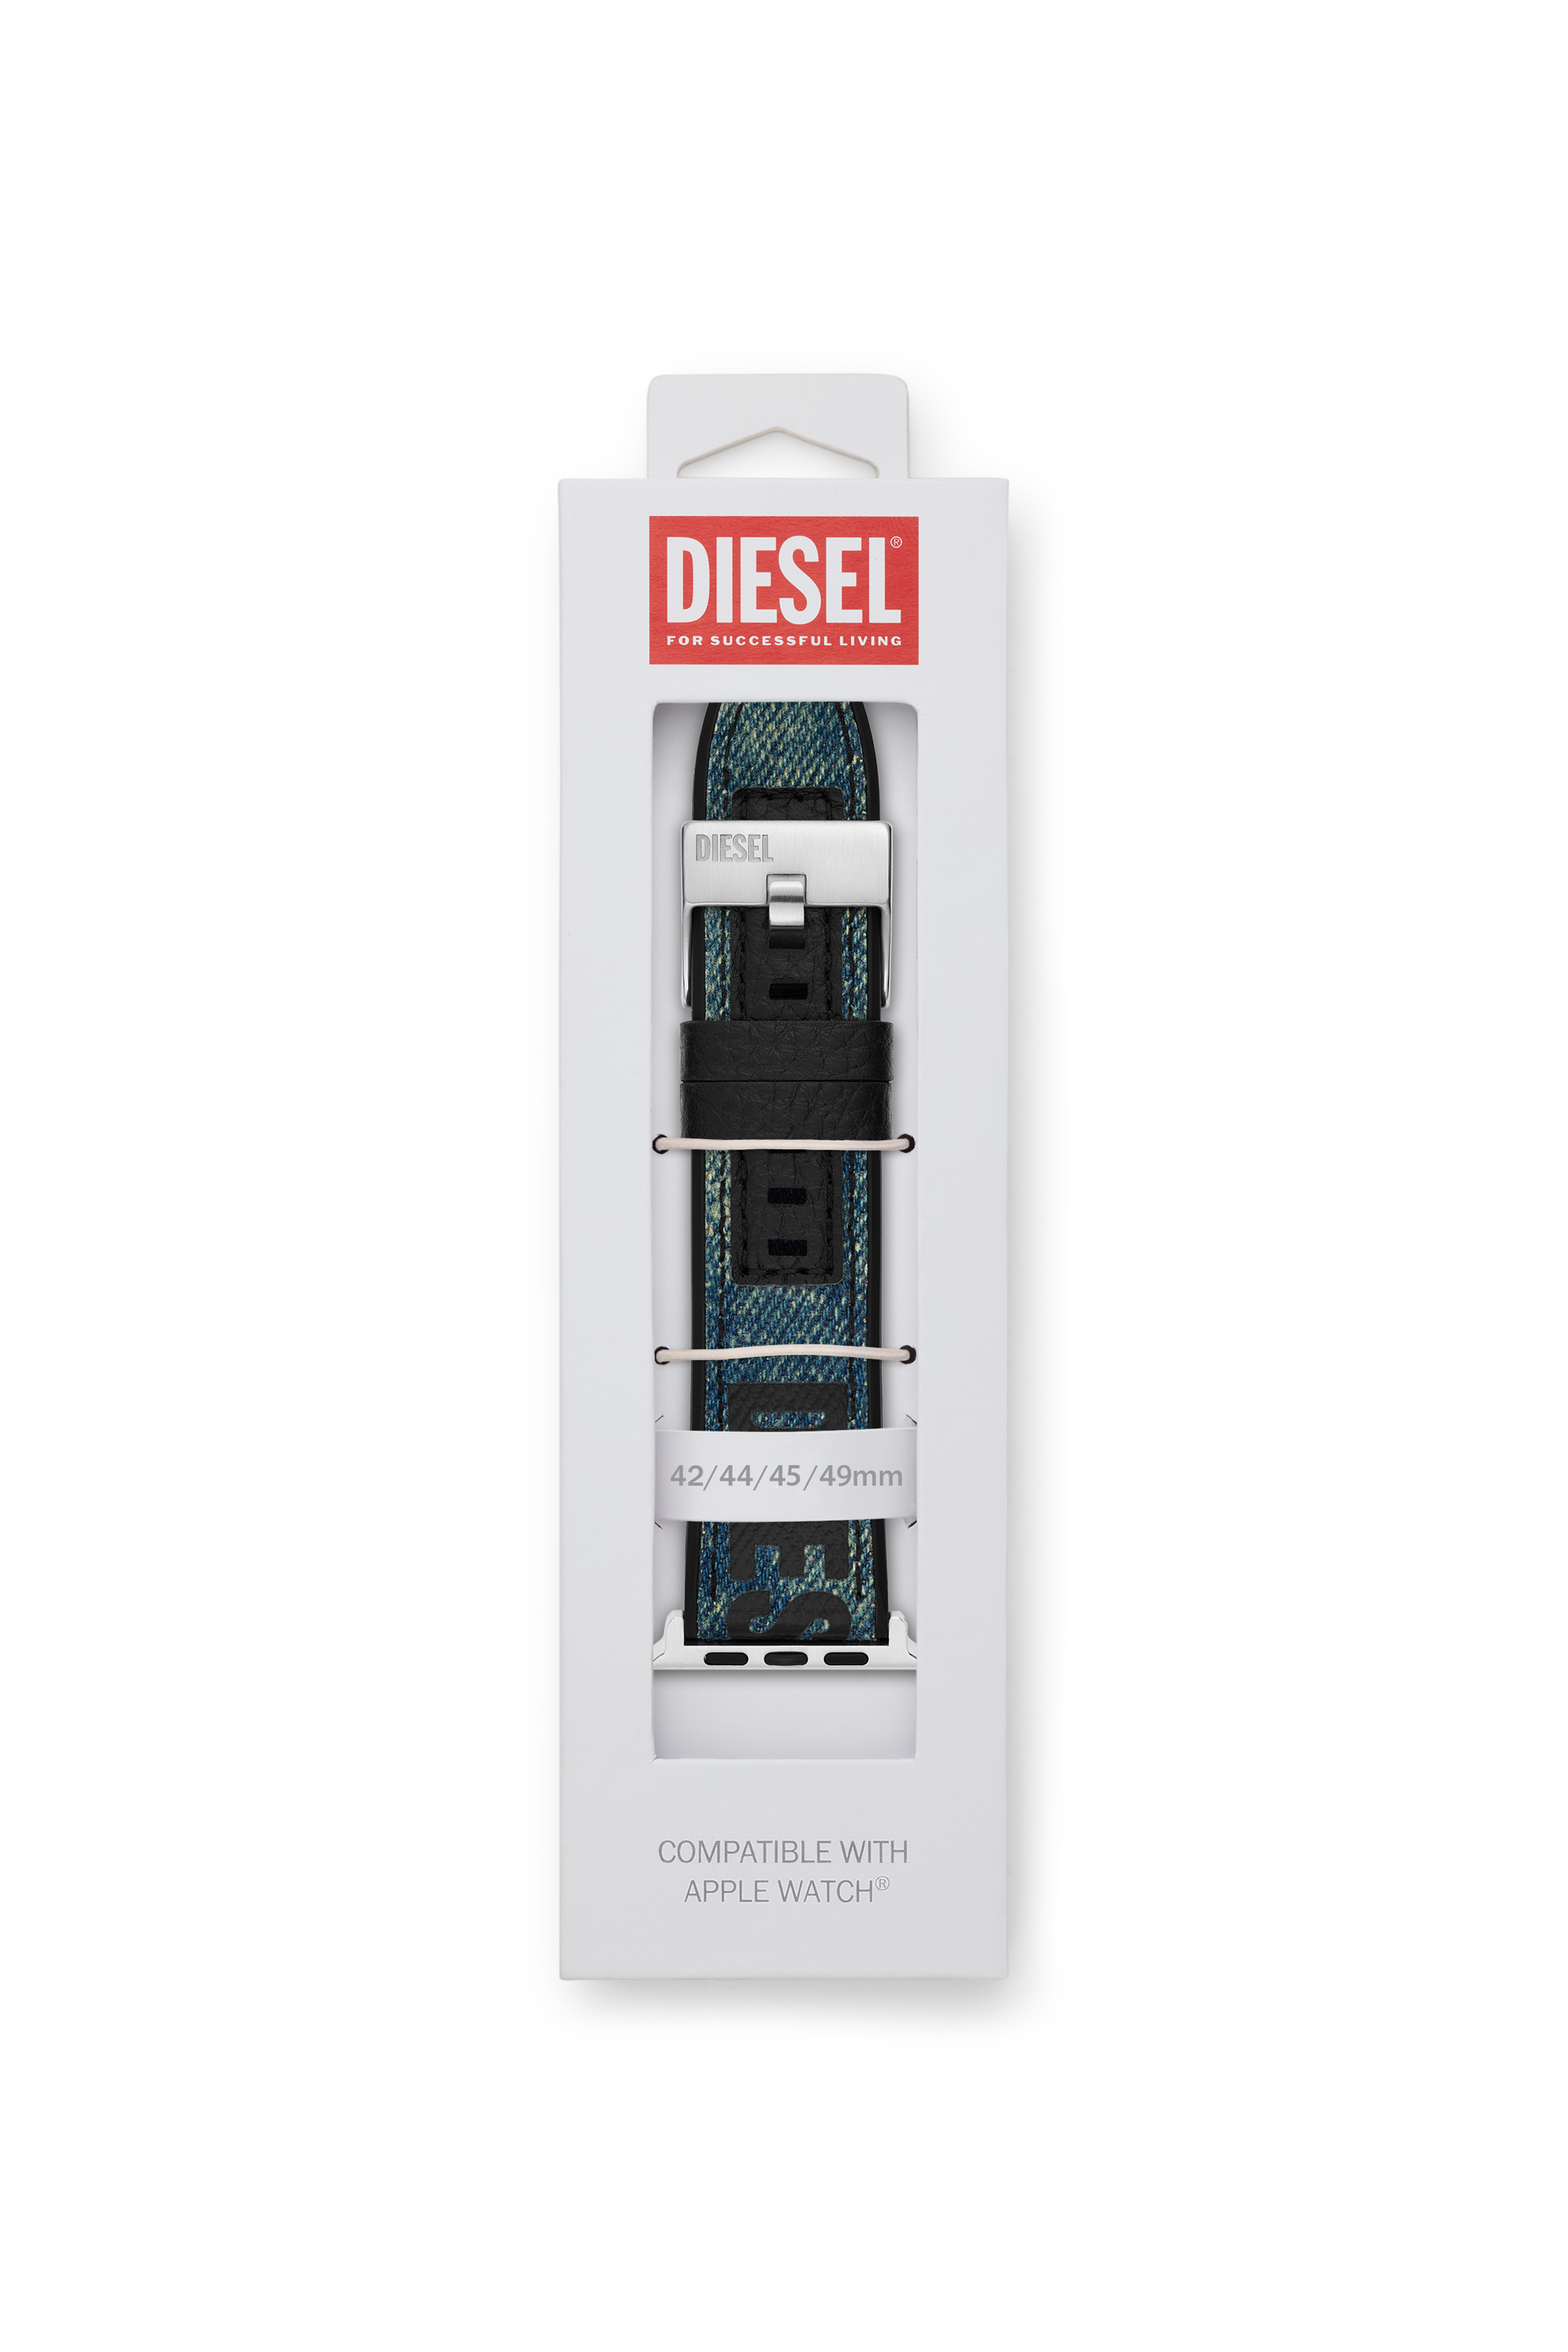 Diesel - DSS0016, Azul - Image 2